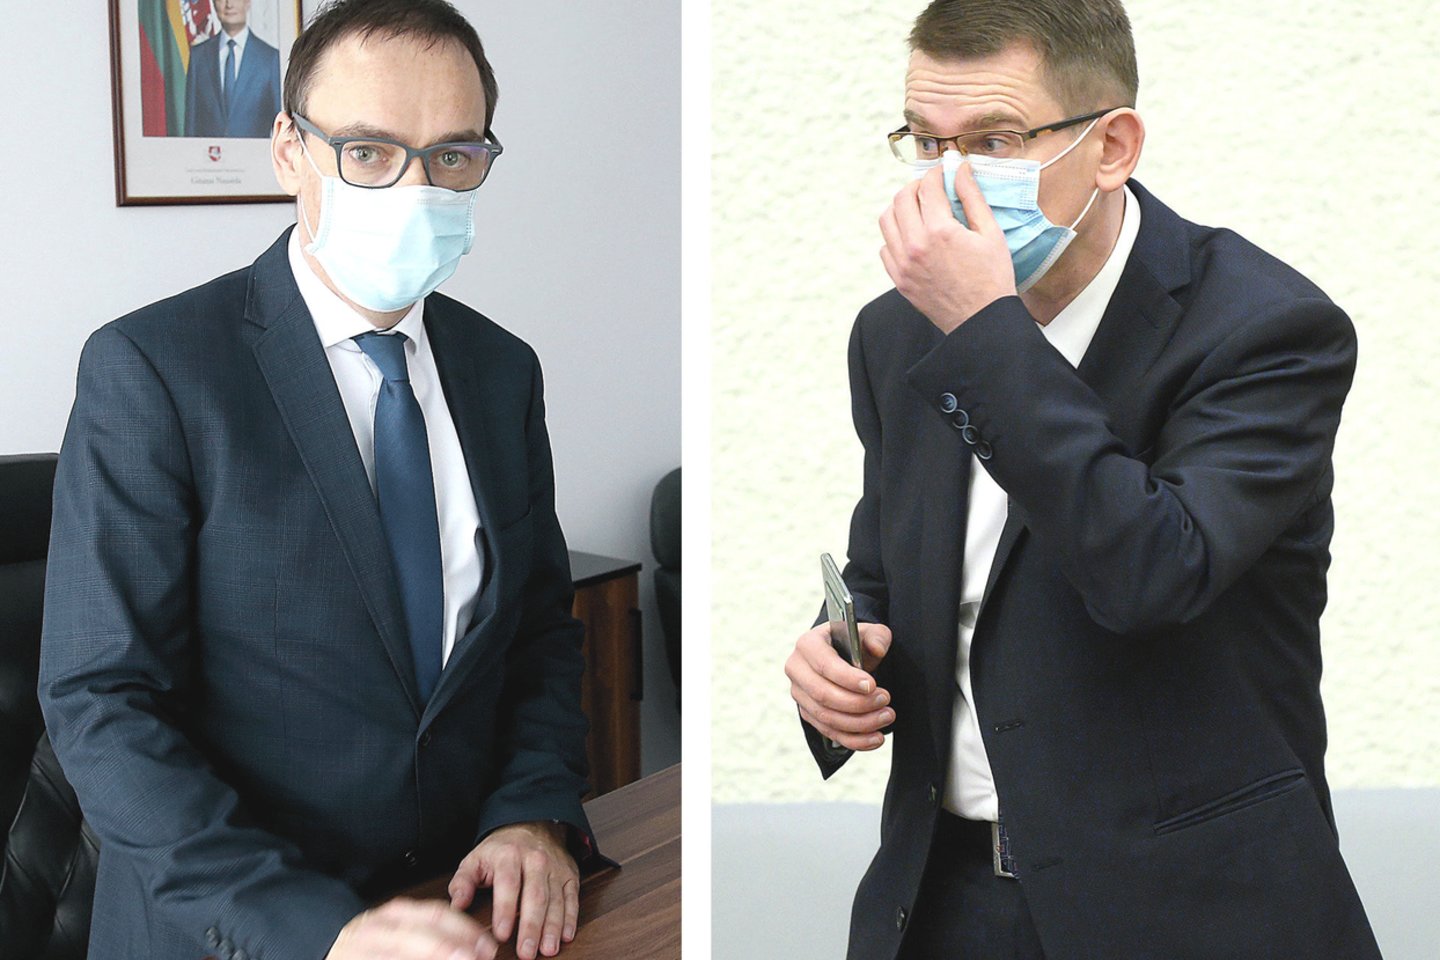 Nacionalinio visuomenės sveikatos centro vadovas R.Petraitis (kairėje) nesutinka su ministro A.Dulkio kritika.